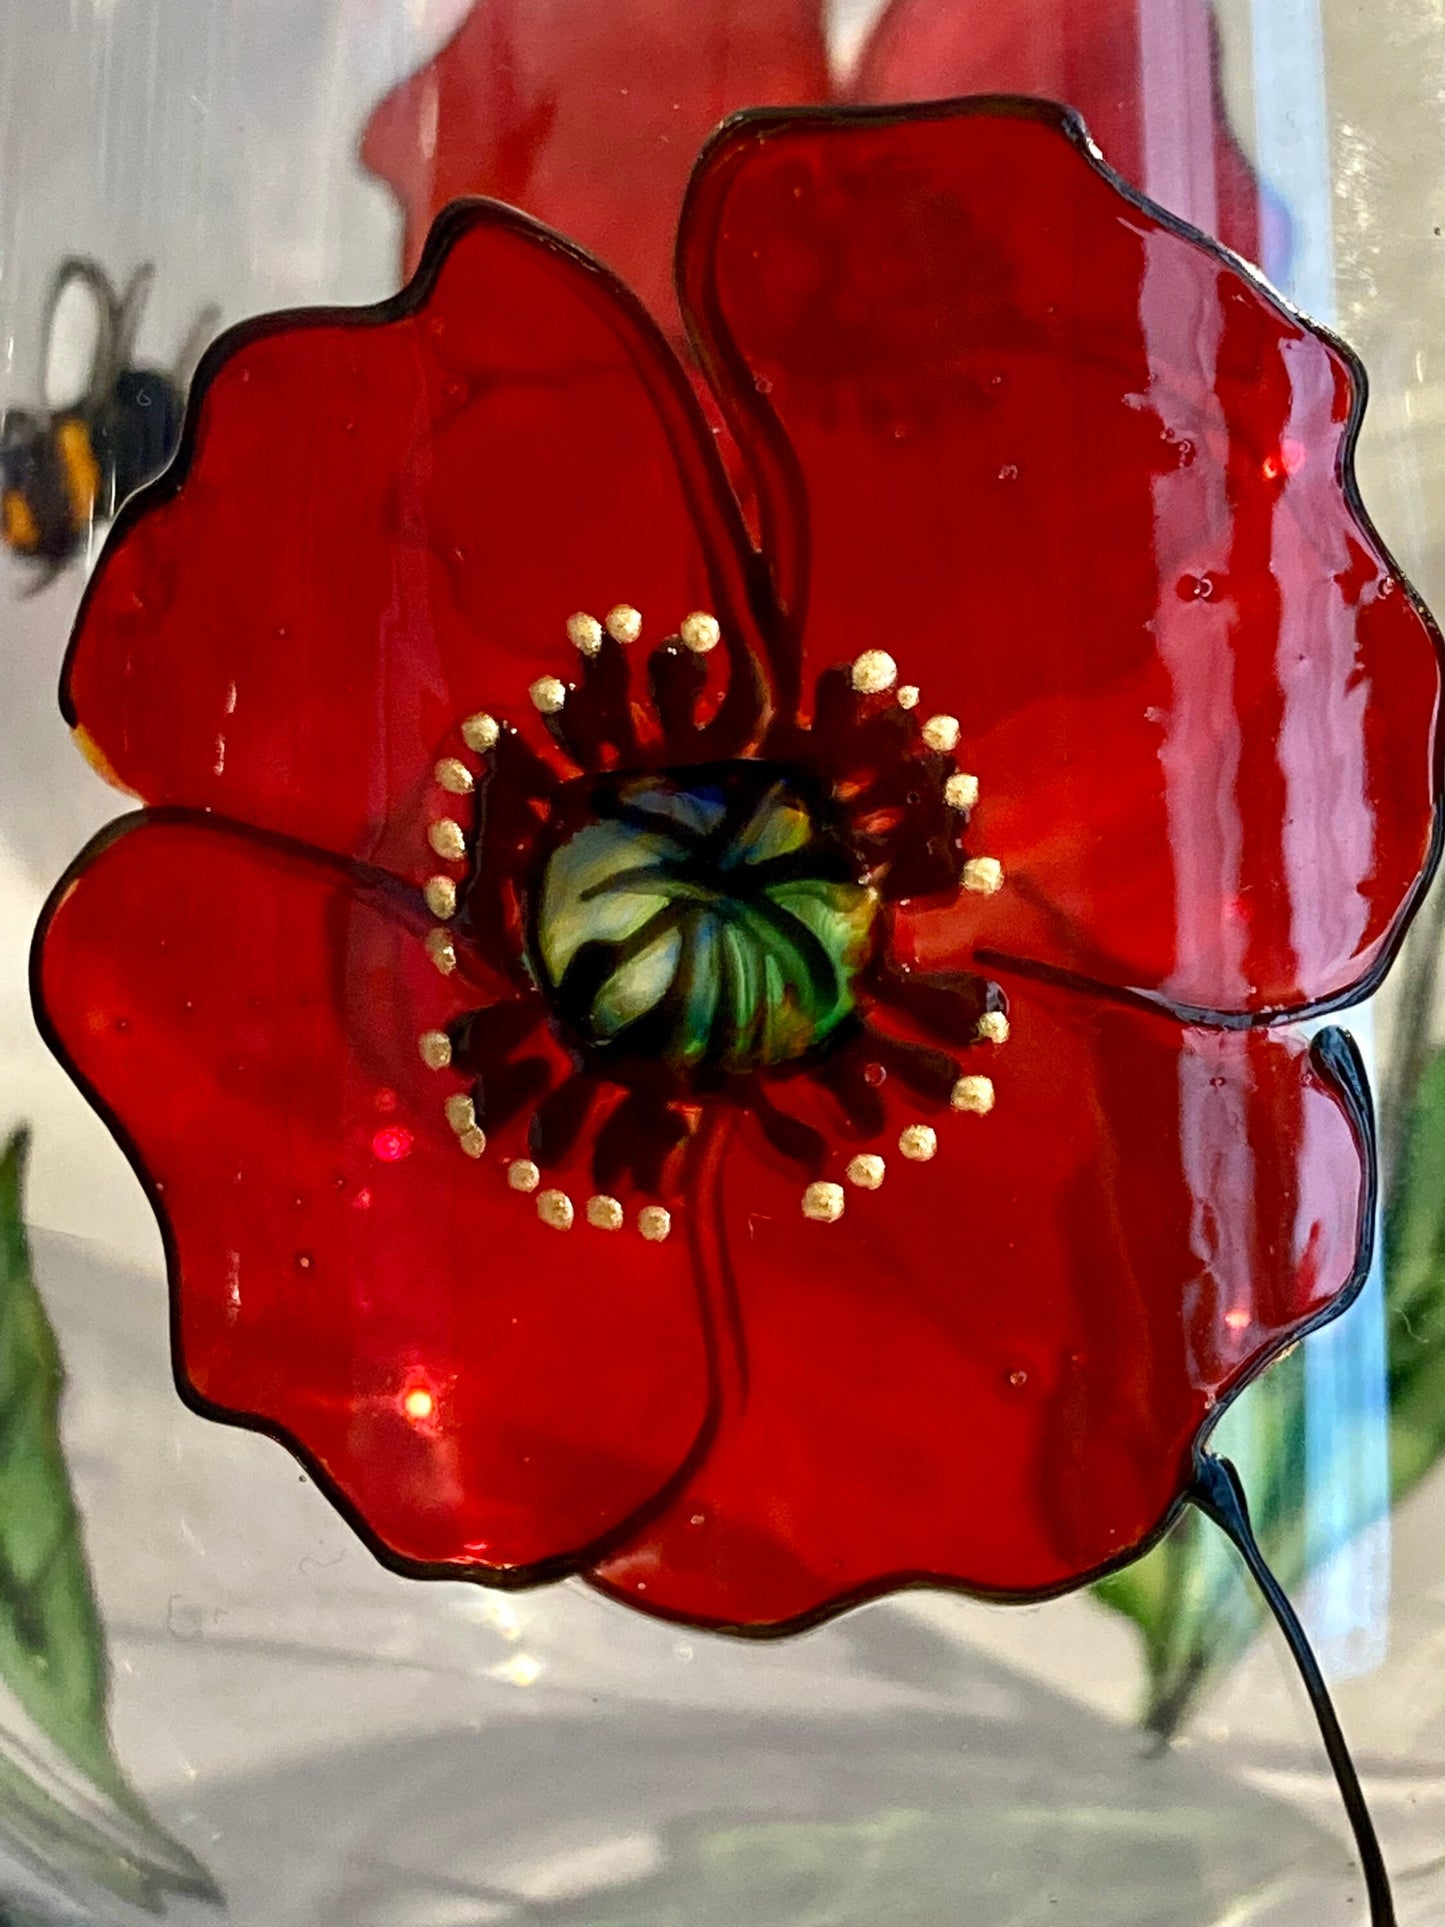 Poppy and Bee design vase